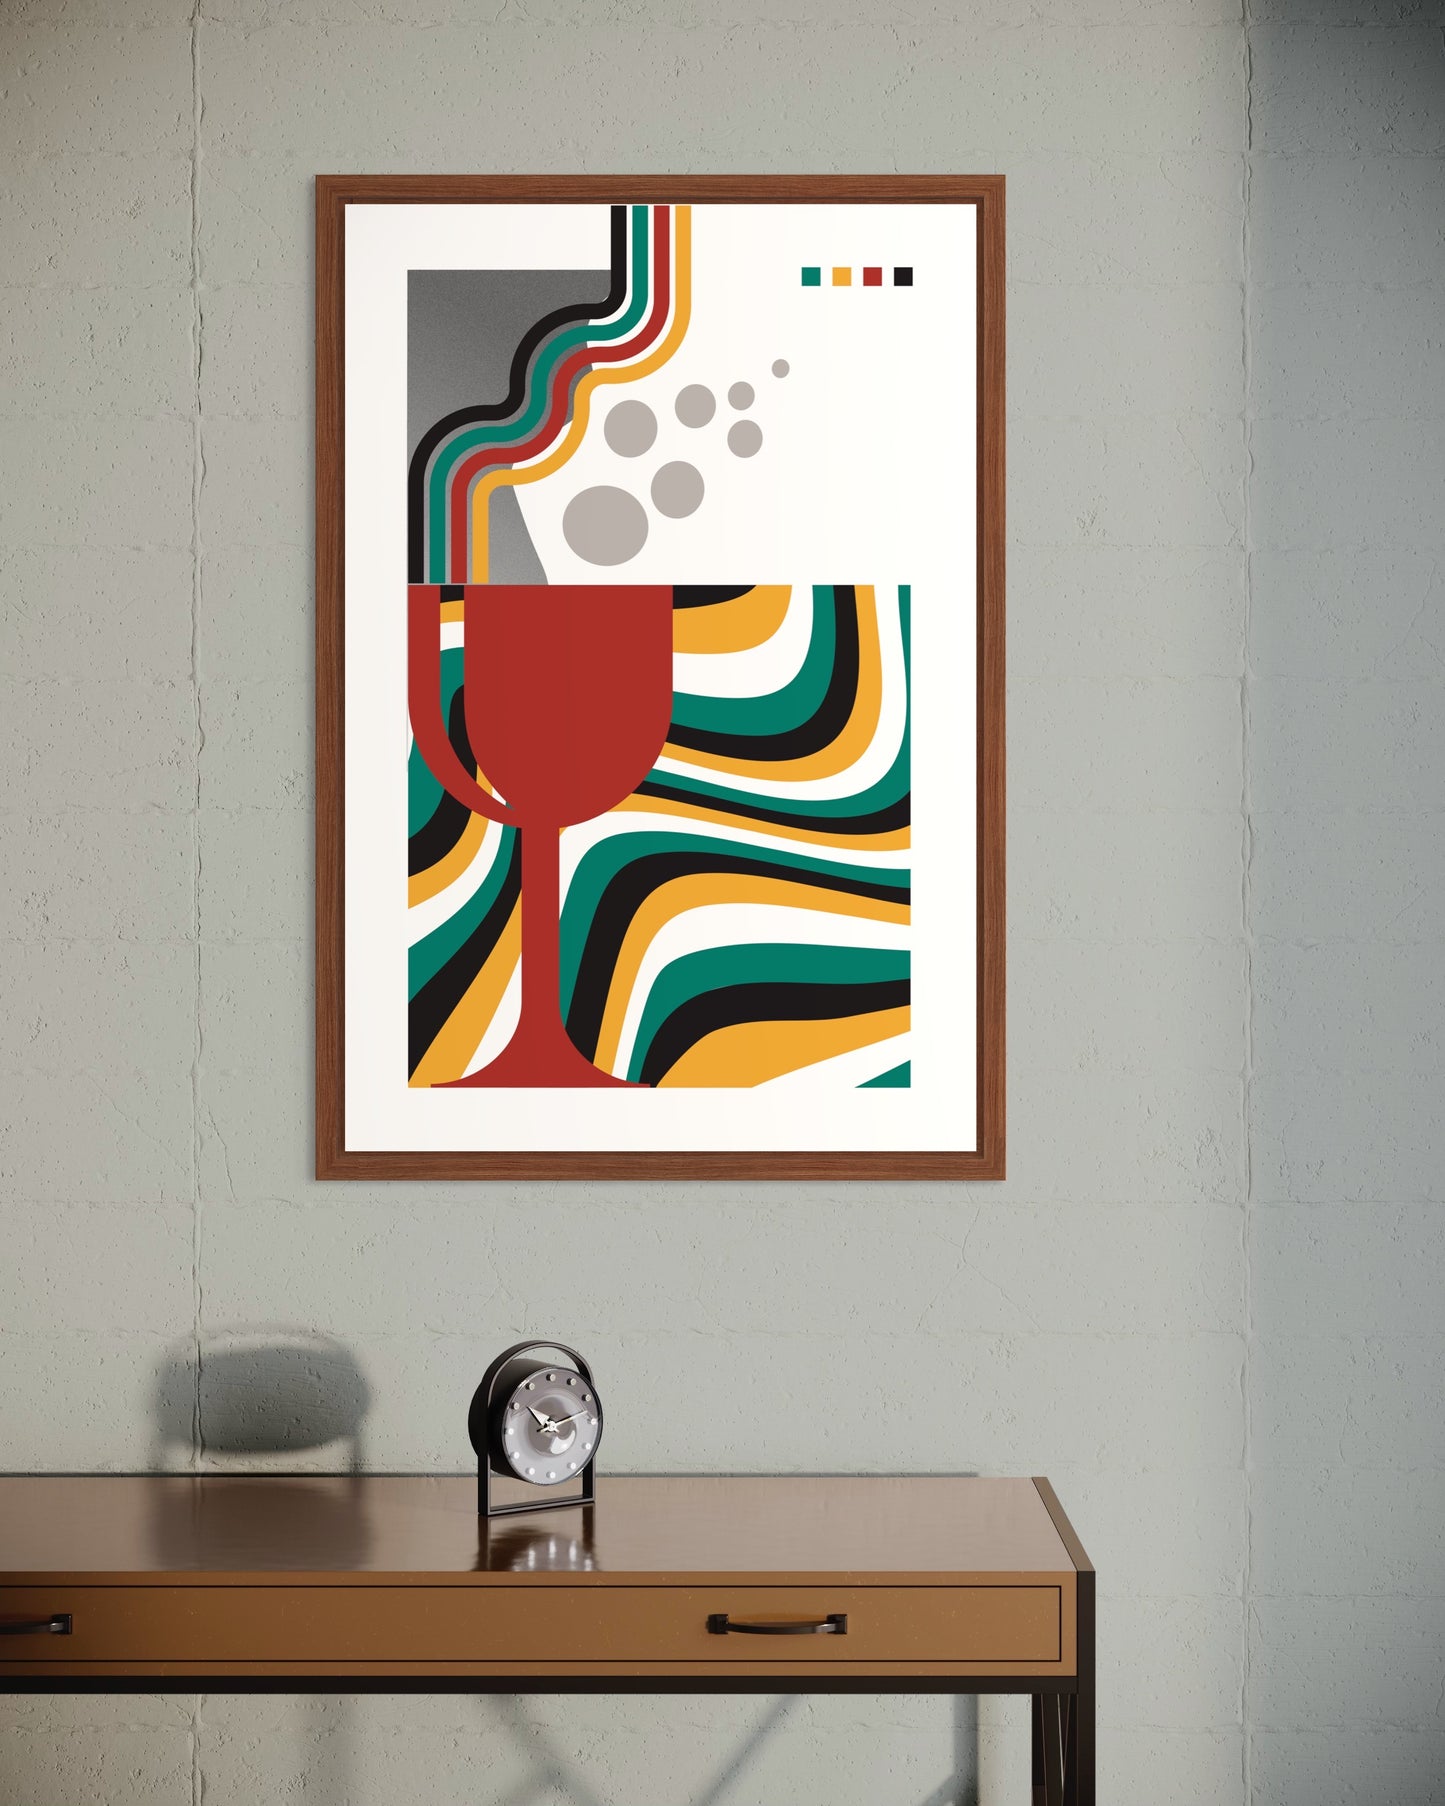 Freya Hearts Premium Poster; Wohnzimmer Poster; Skandinavisches Design; Minimalistisches Poster; Moderne Wall Art; Esszimmer Poster; Küchen Poster; Wandkunst